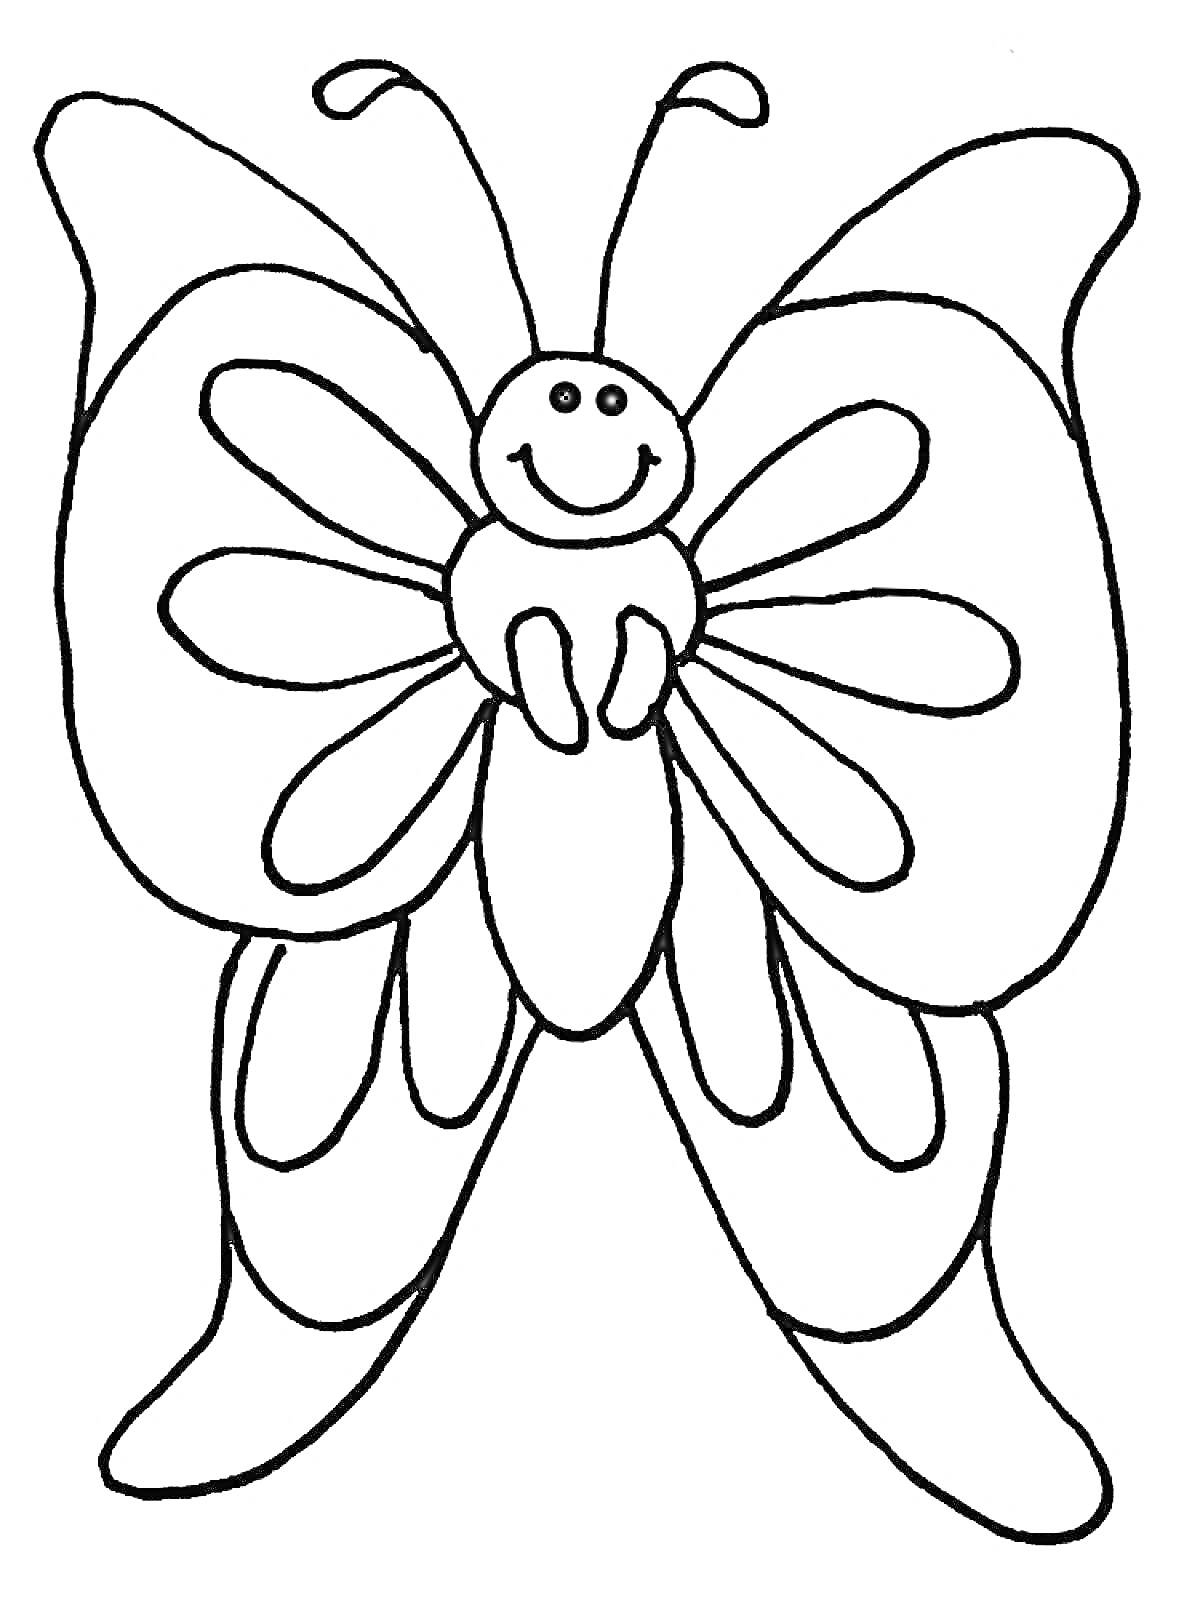 Раскраска бабочка с улыбающимся лицом и узором на крыльях